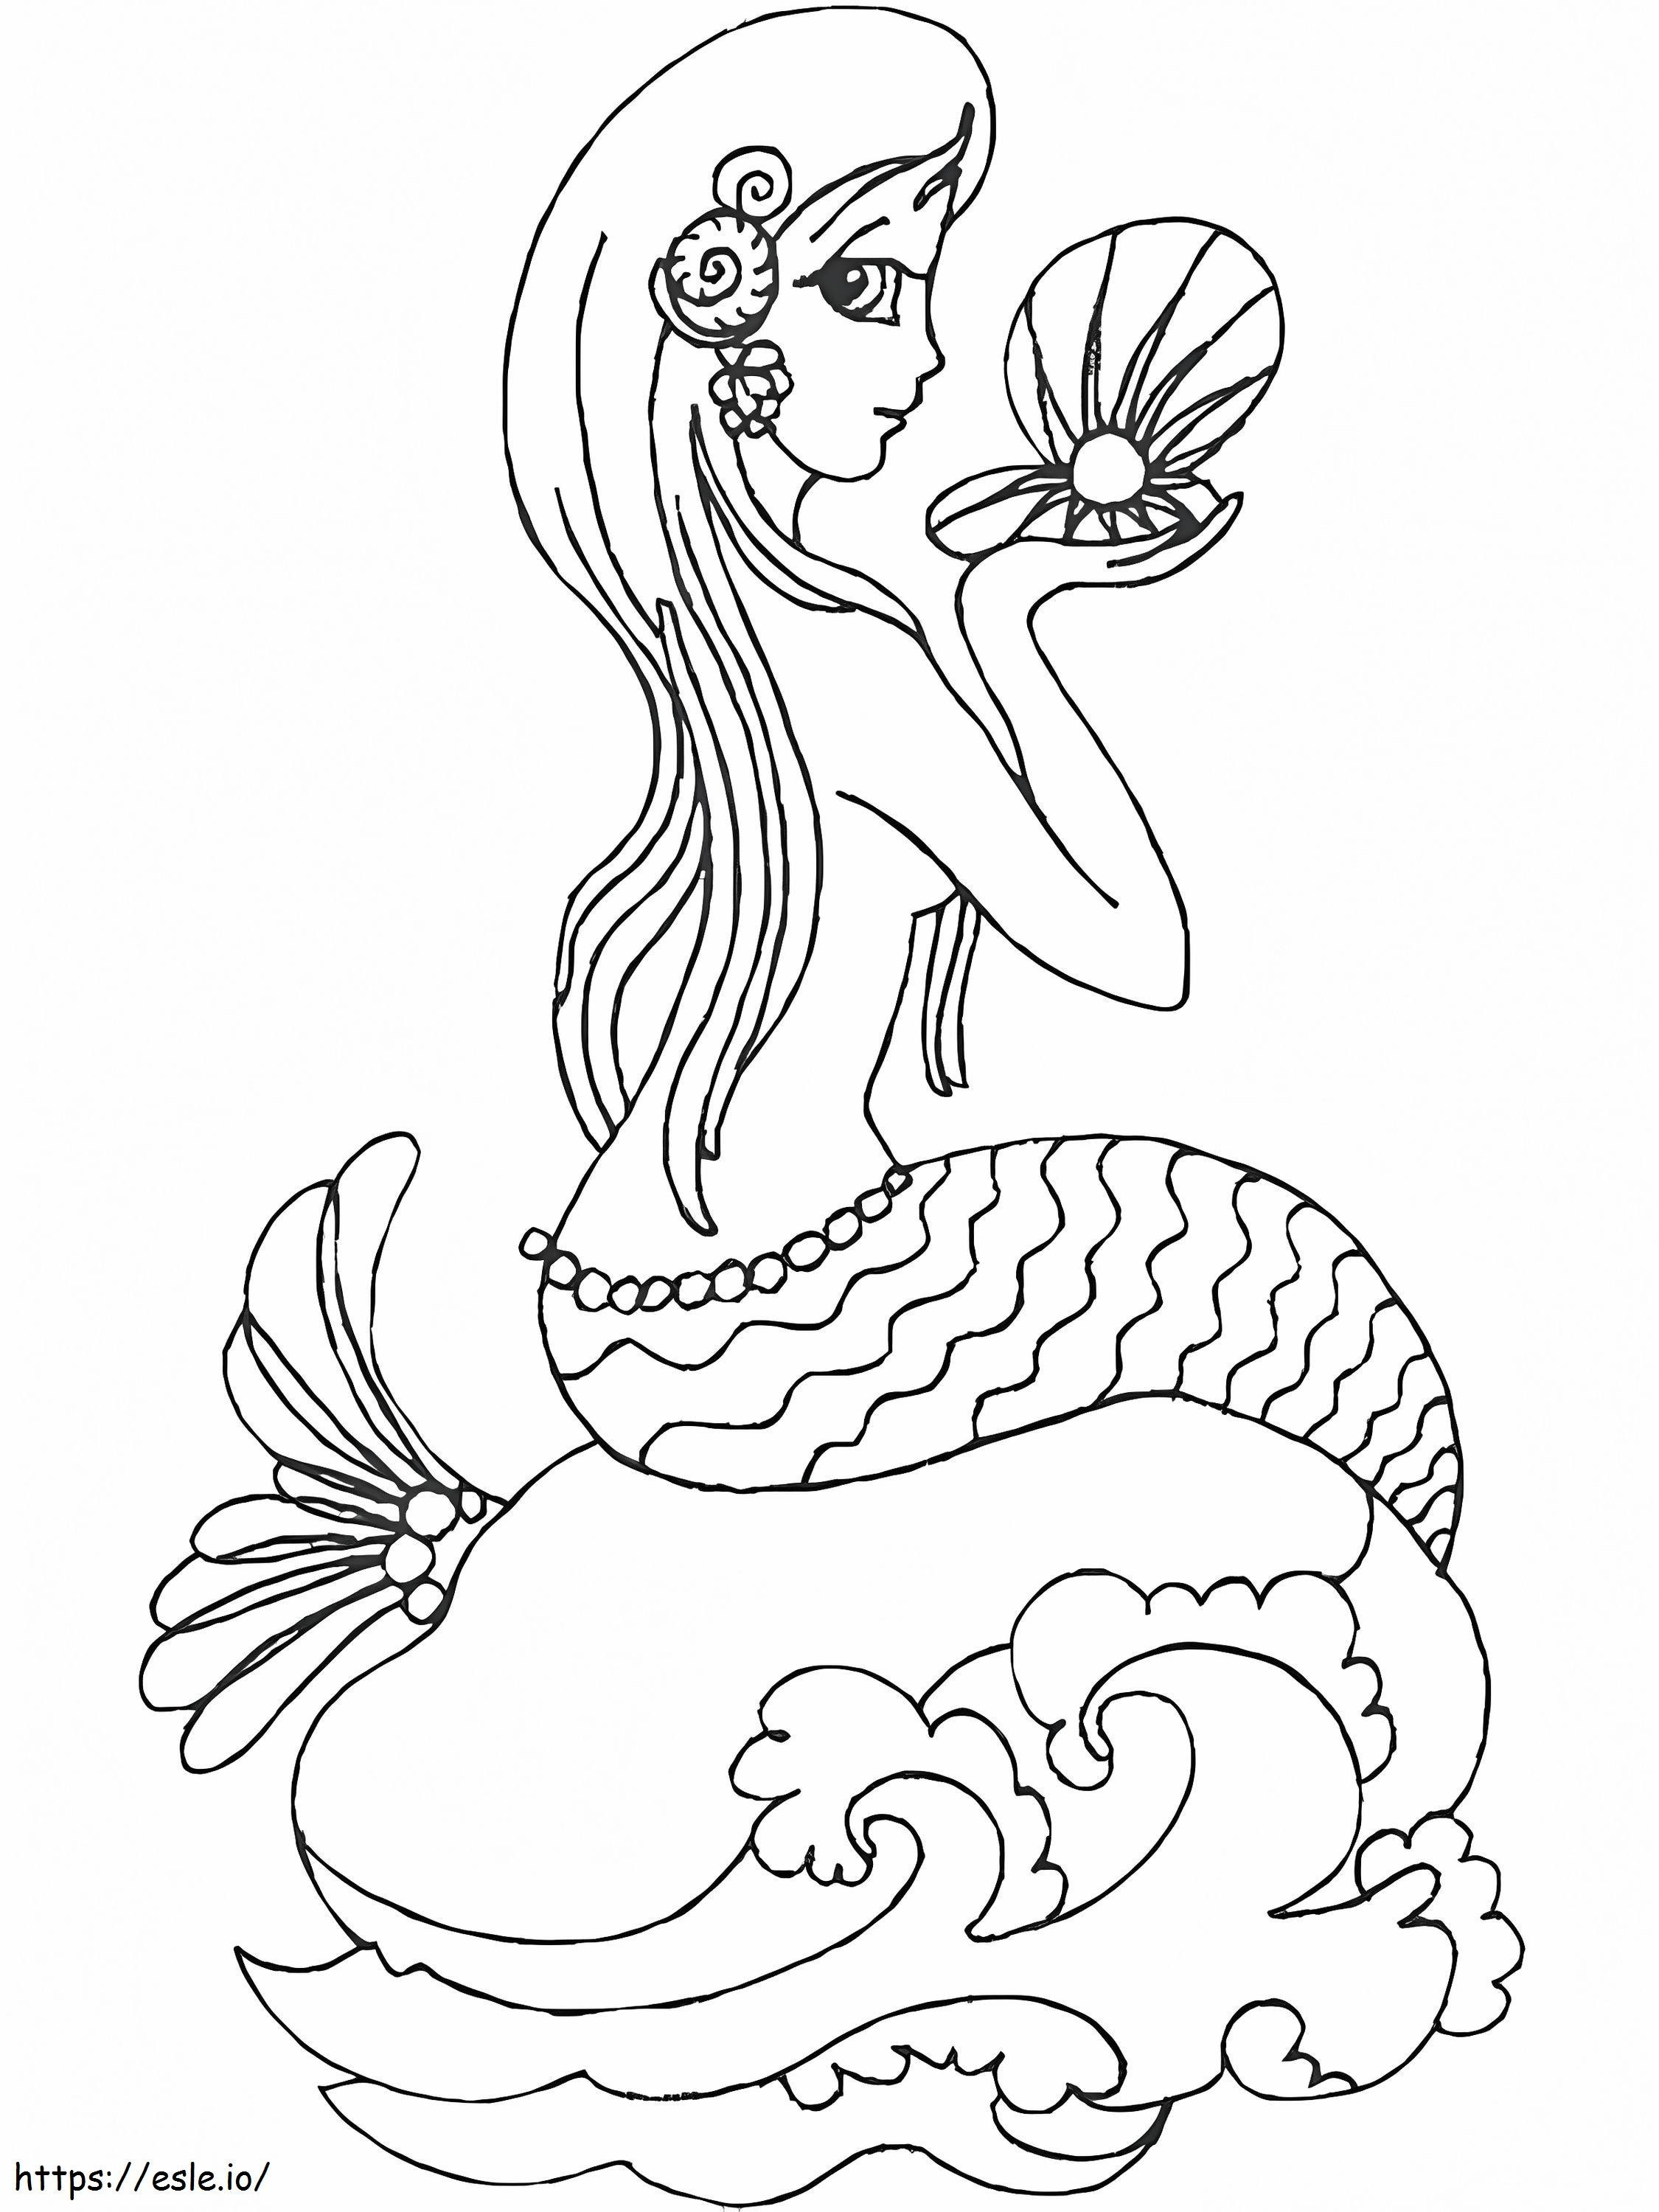 Meerjungfrau für Kinder ausmalbilder